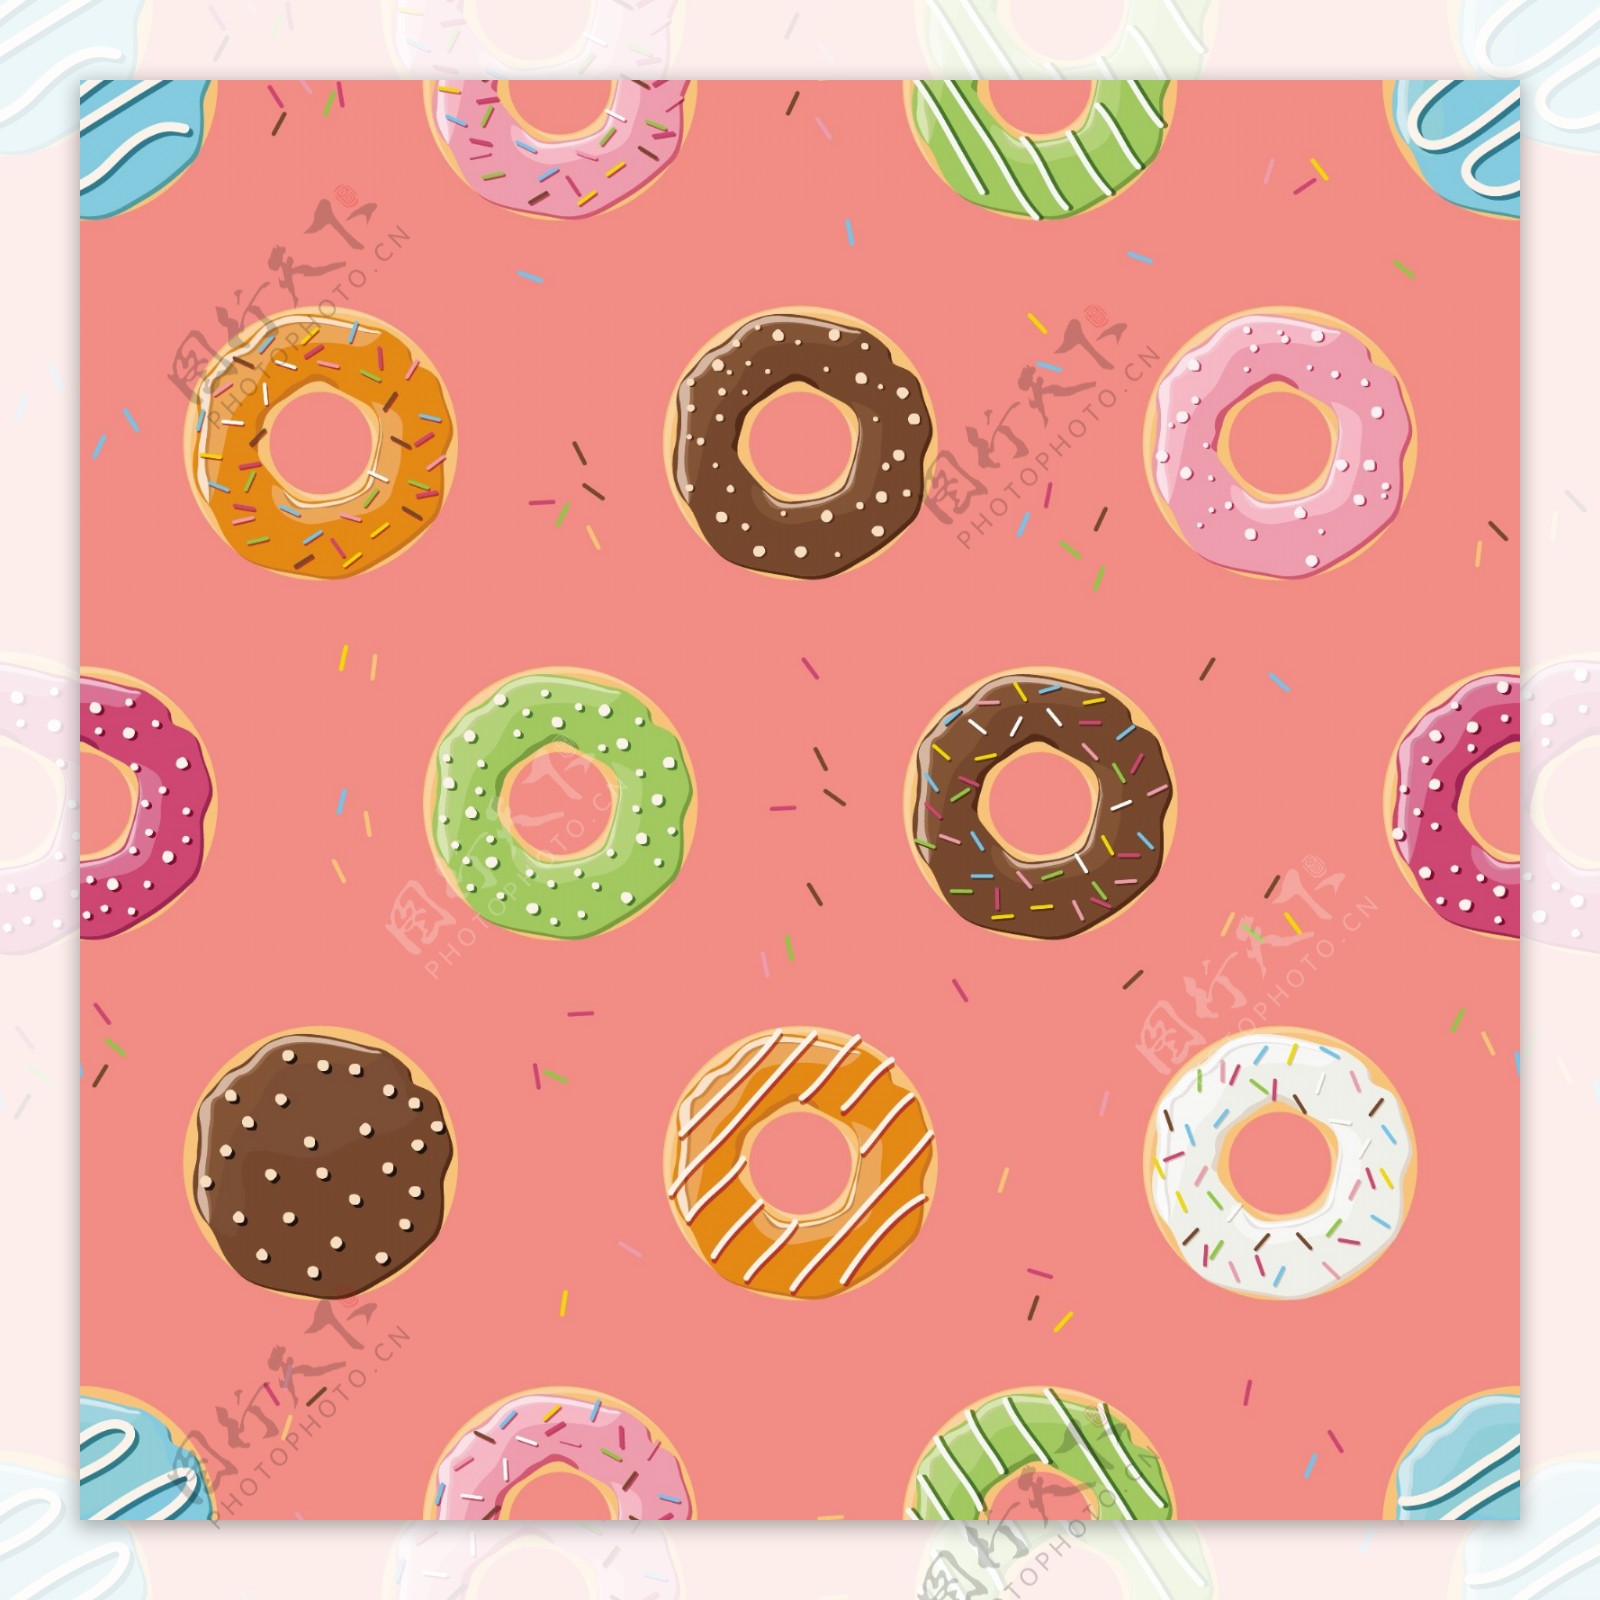 彩色的甜甜圈图案设计